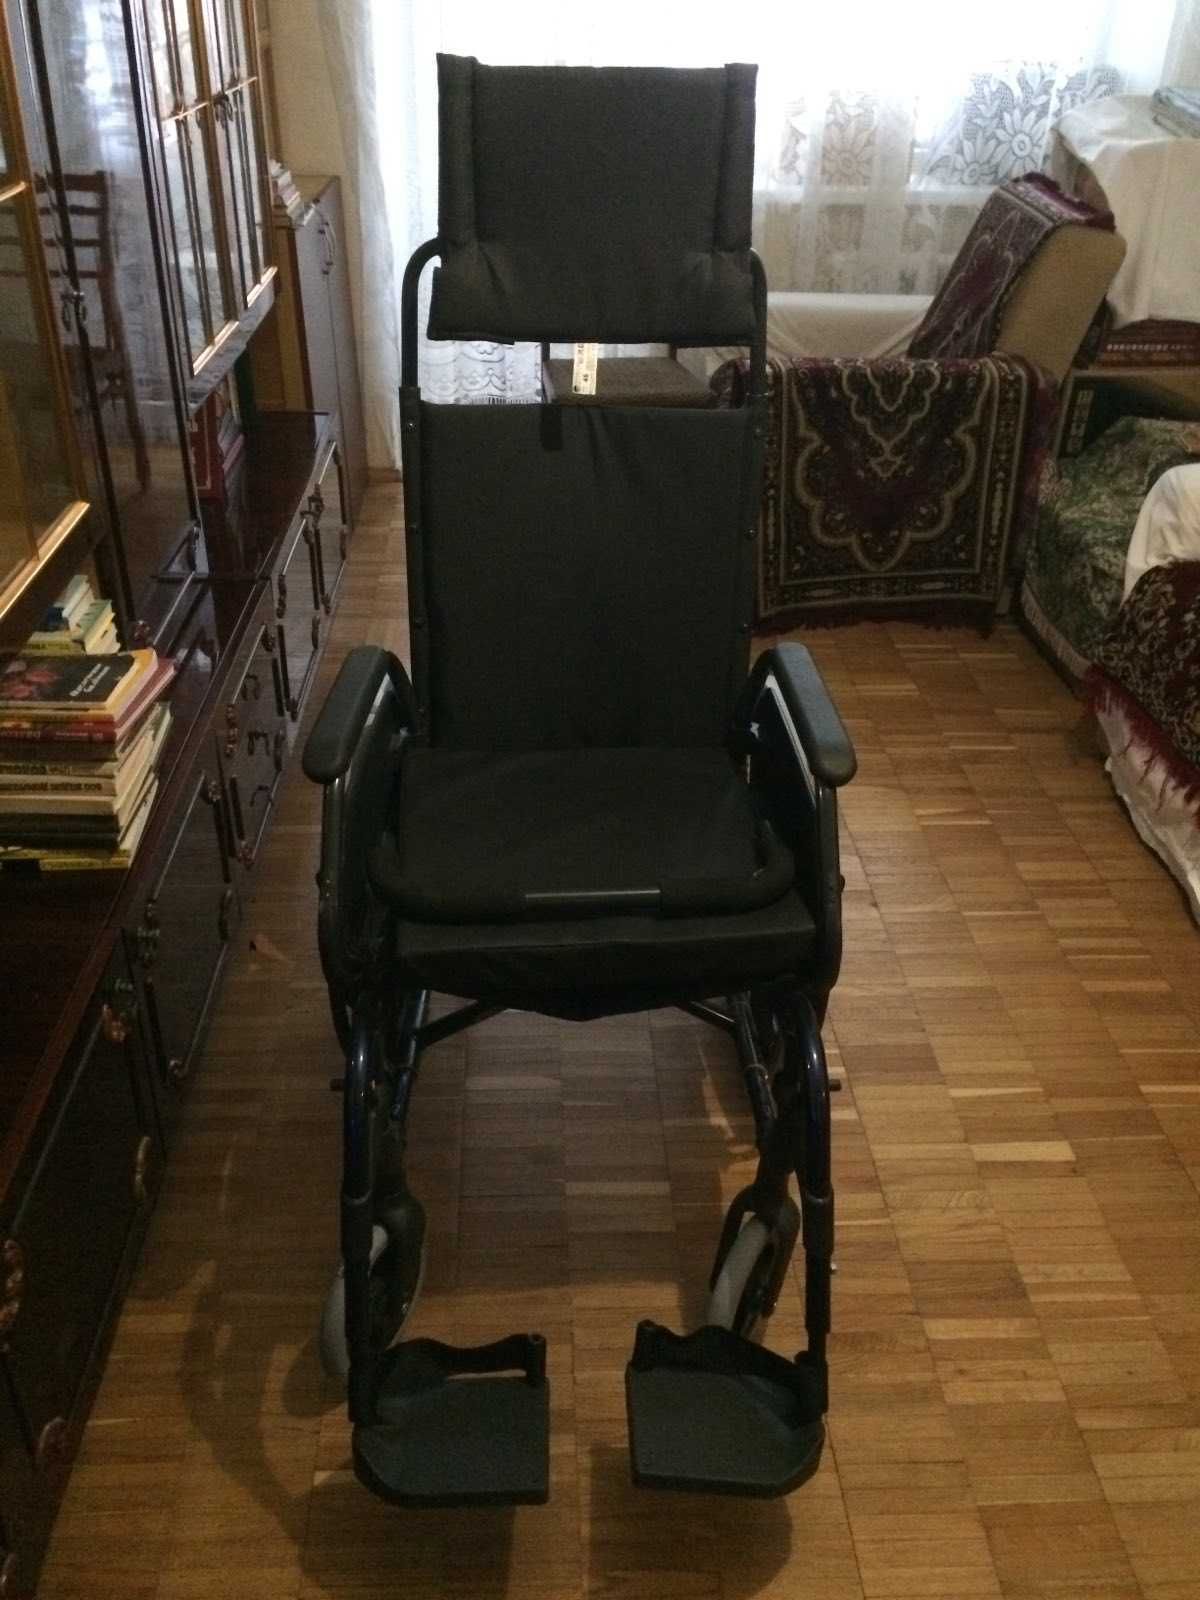 інвалідний візок